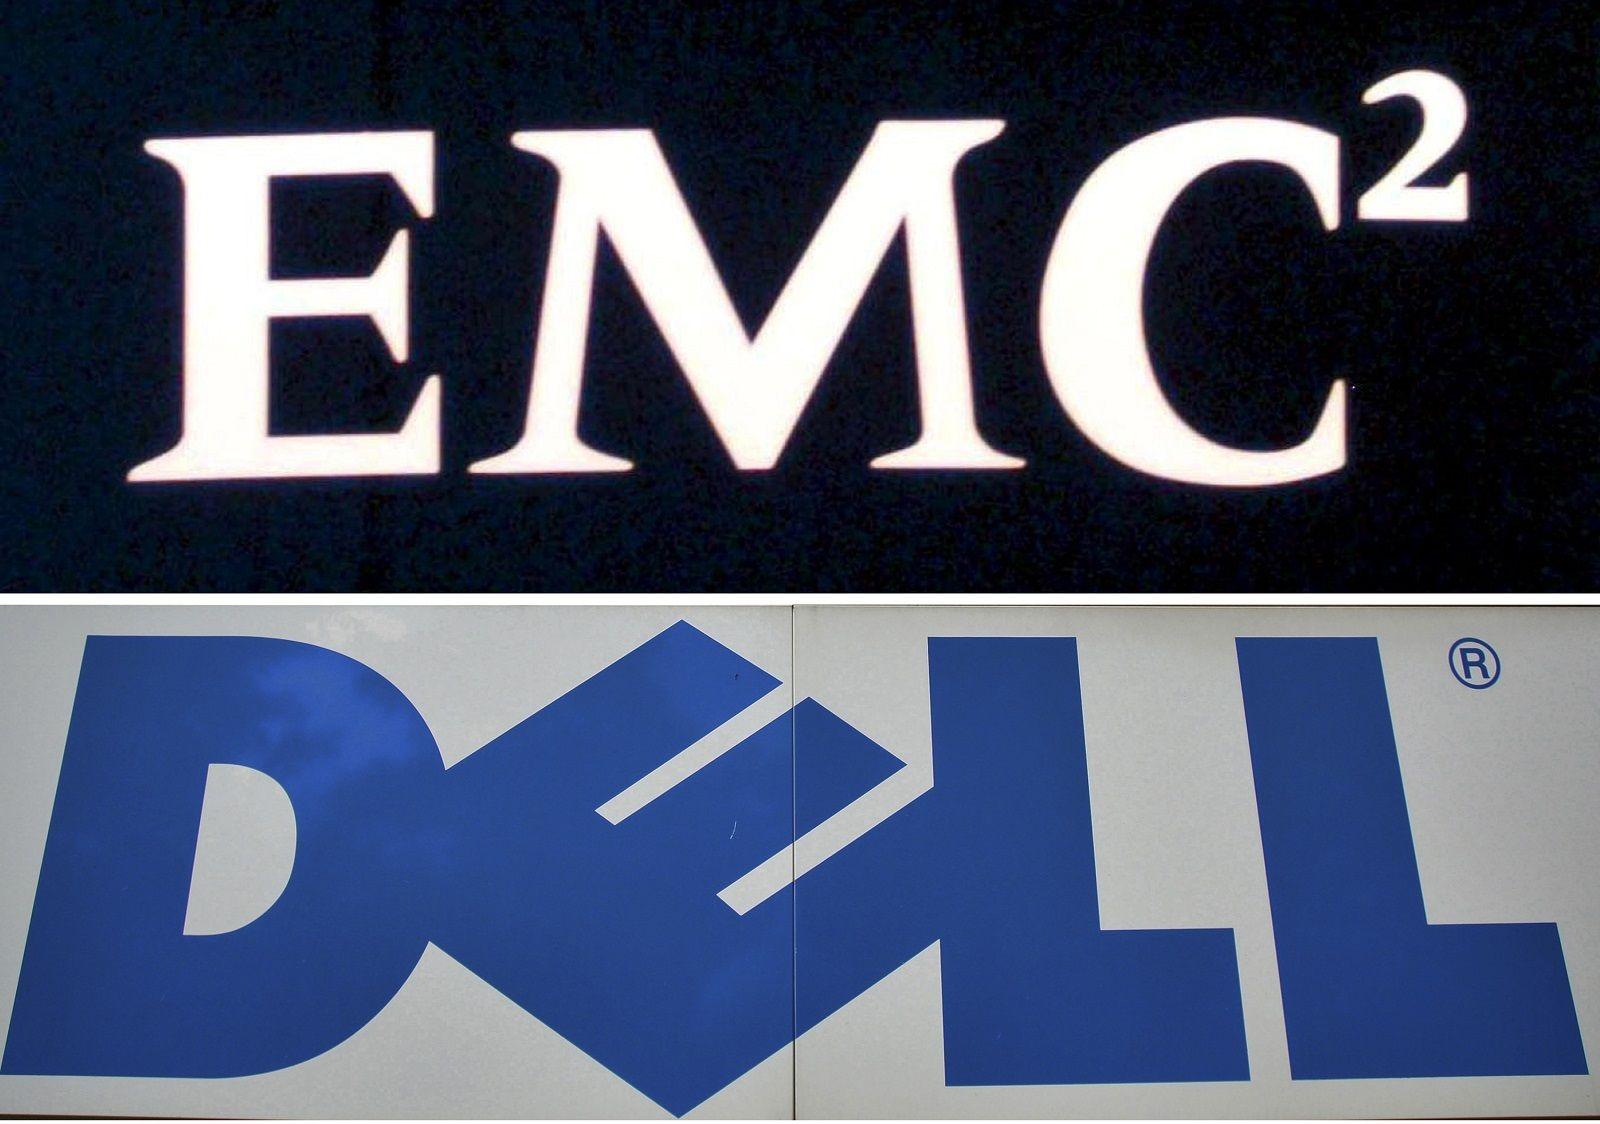 EMC Corporation Logo - Dell will acquire EMC Corporation for $67 billion